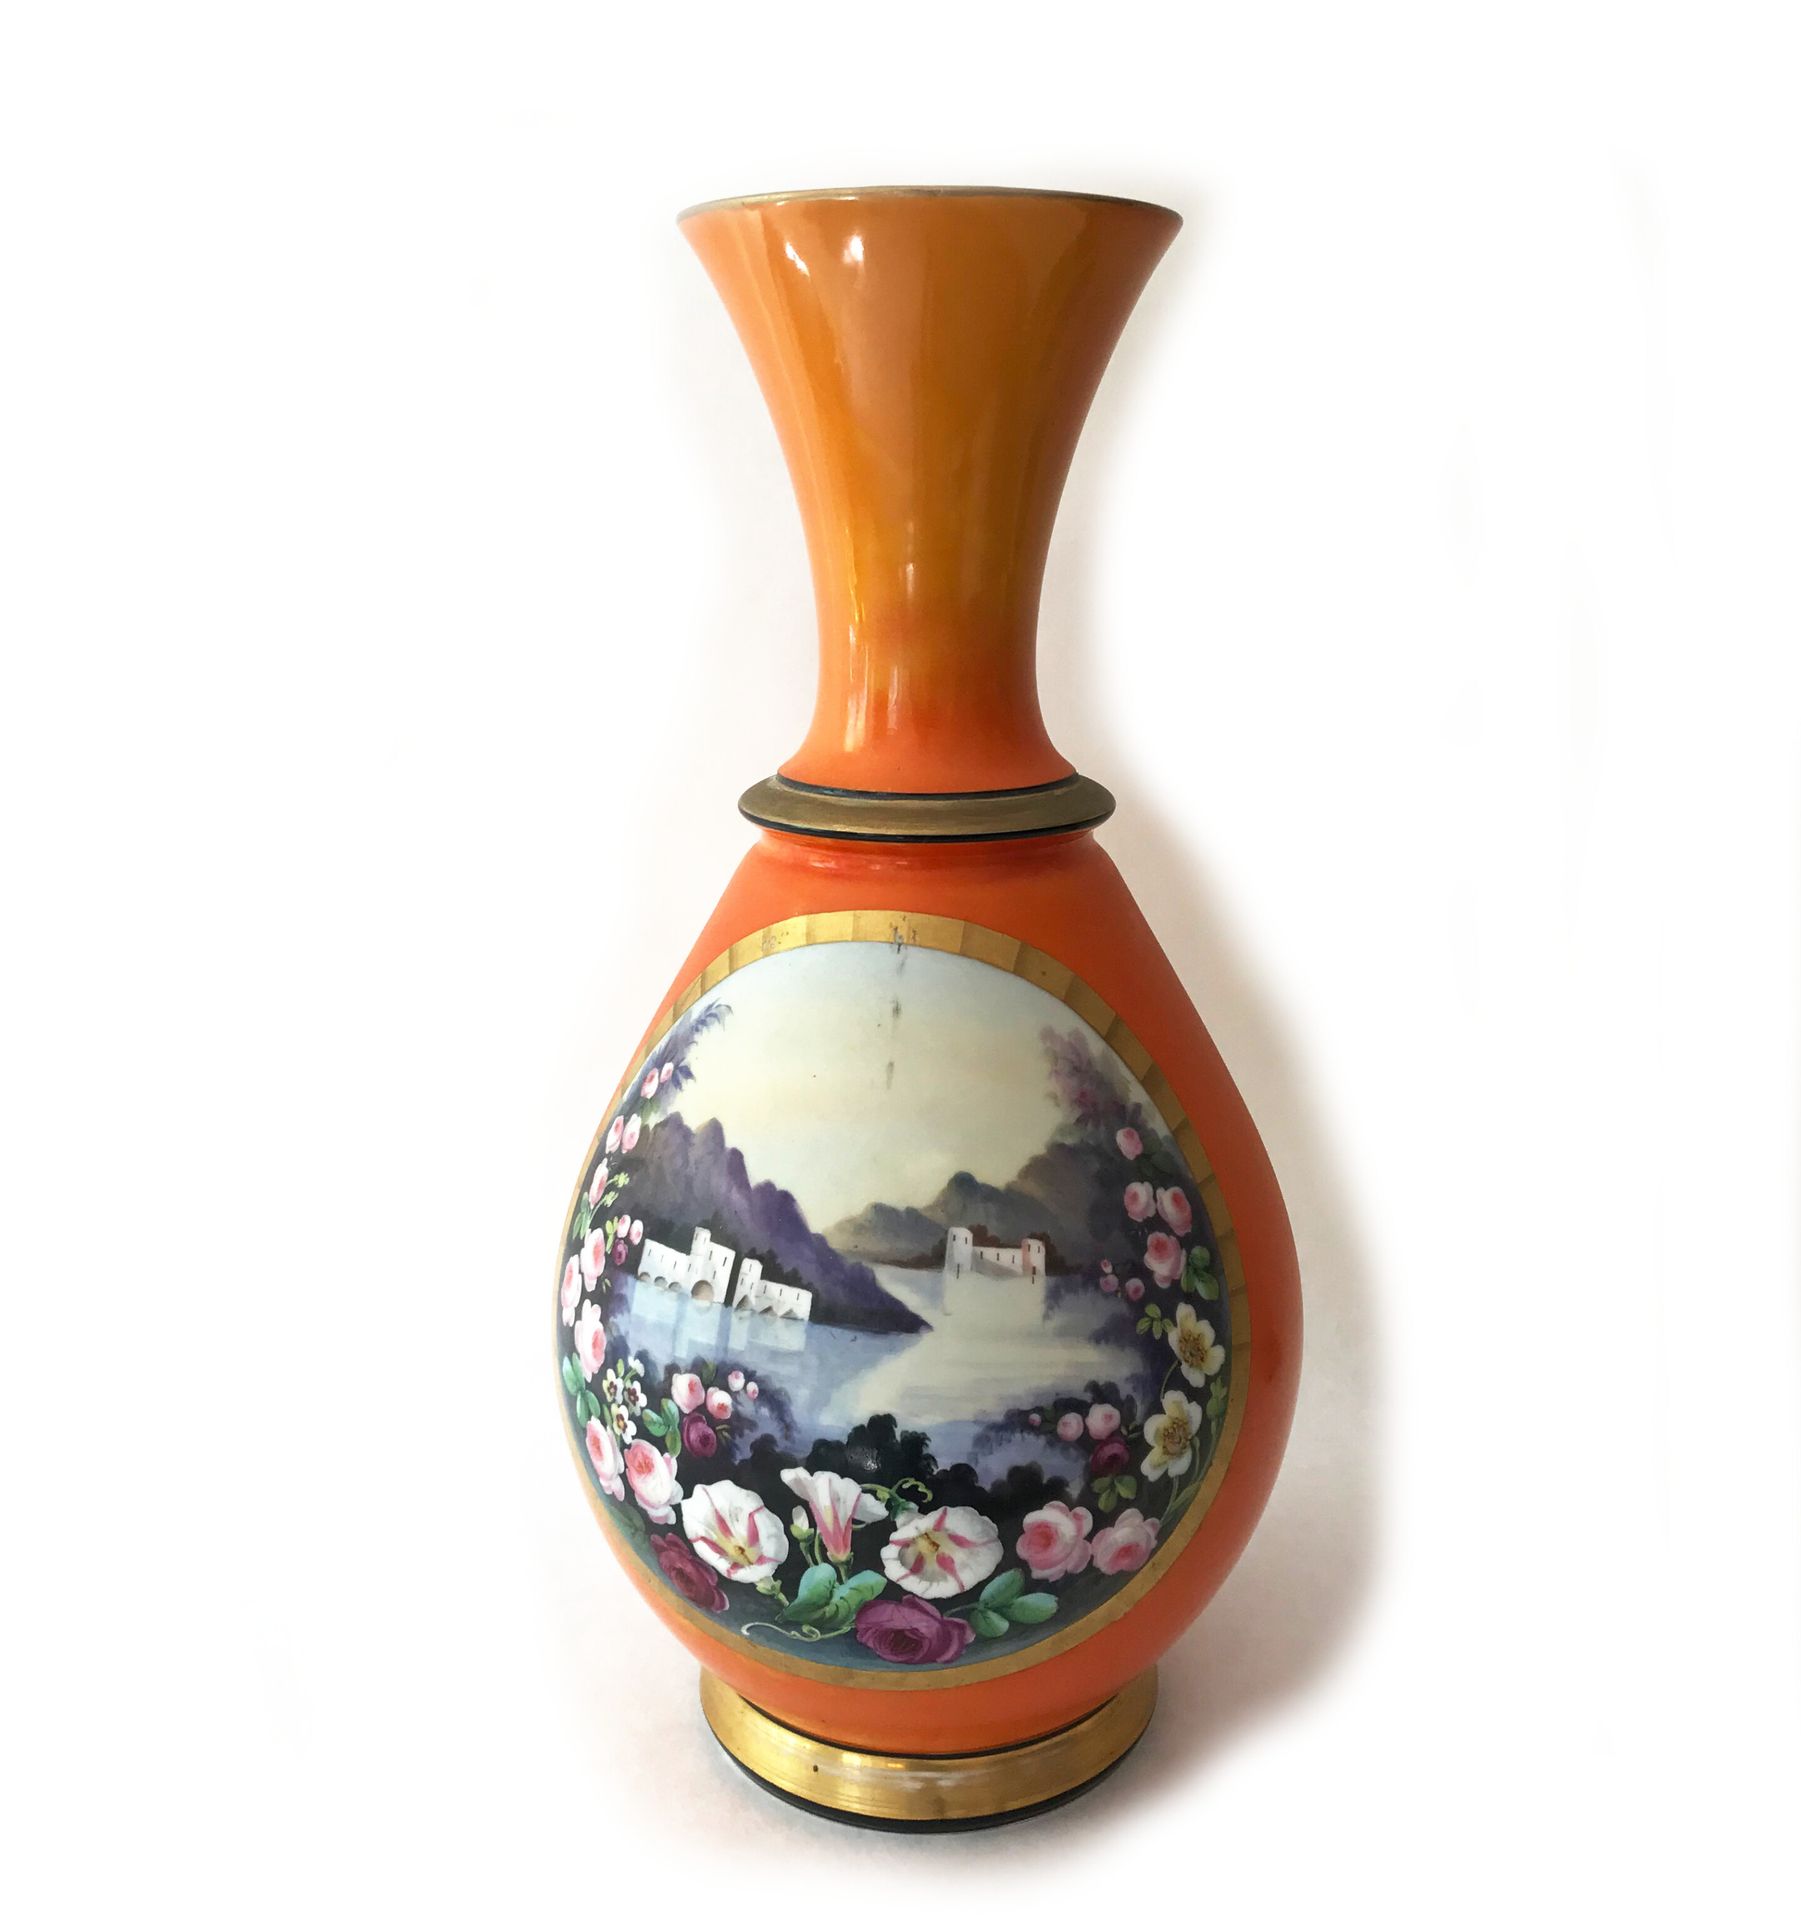 Null 阳台形状的大瓷瓶，在橙色的背景上保留了一幅风景。19世纪末-20世纪初

H.40厘米